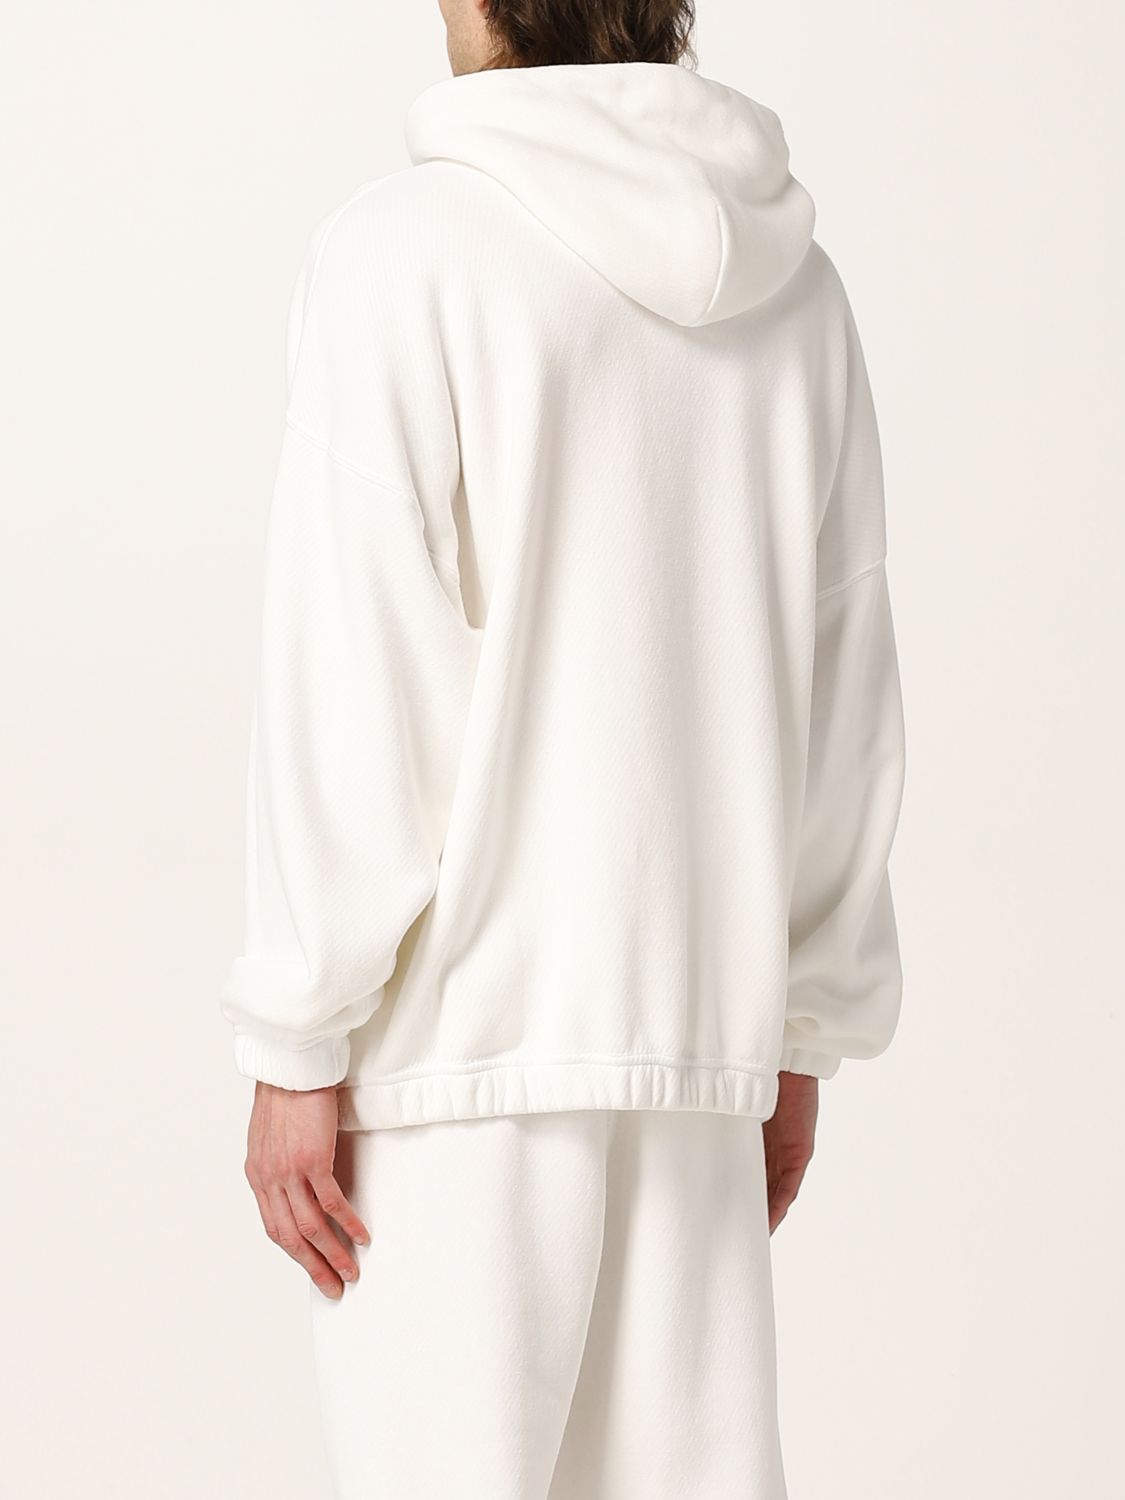 Sweatshirt Giorgio Armani: Sweatshirt Giorgio Armani homme blanc 3